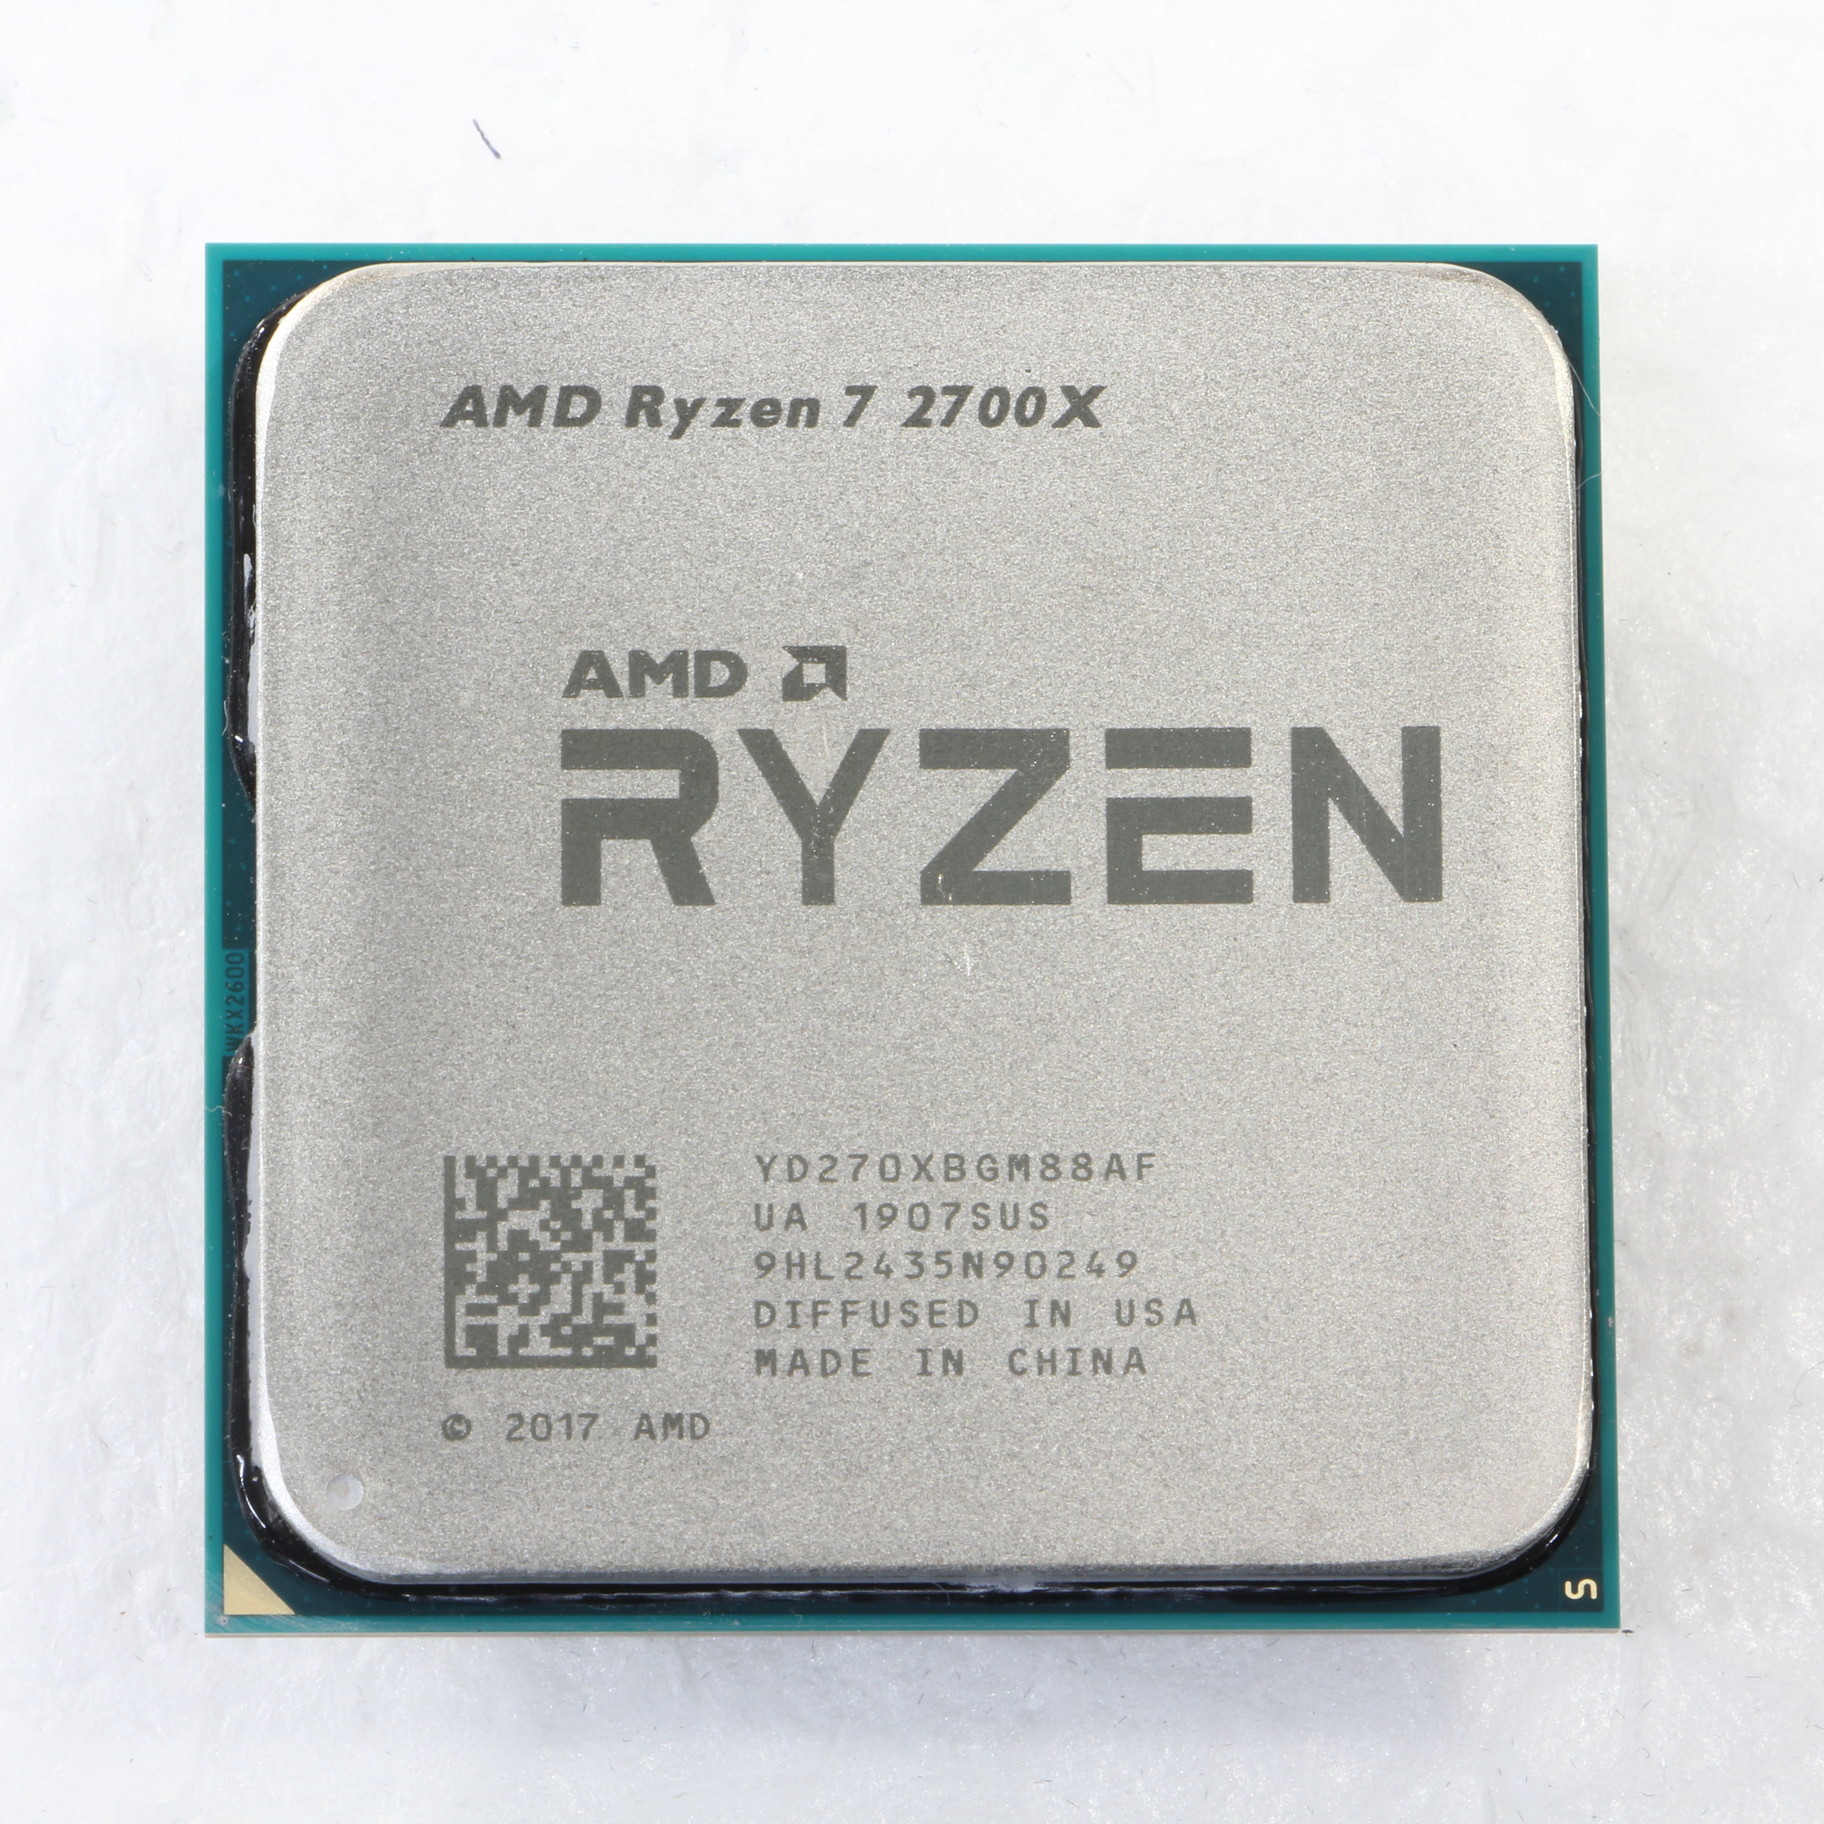 AMD ryzen 7 2700x CPU